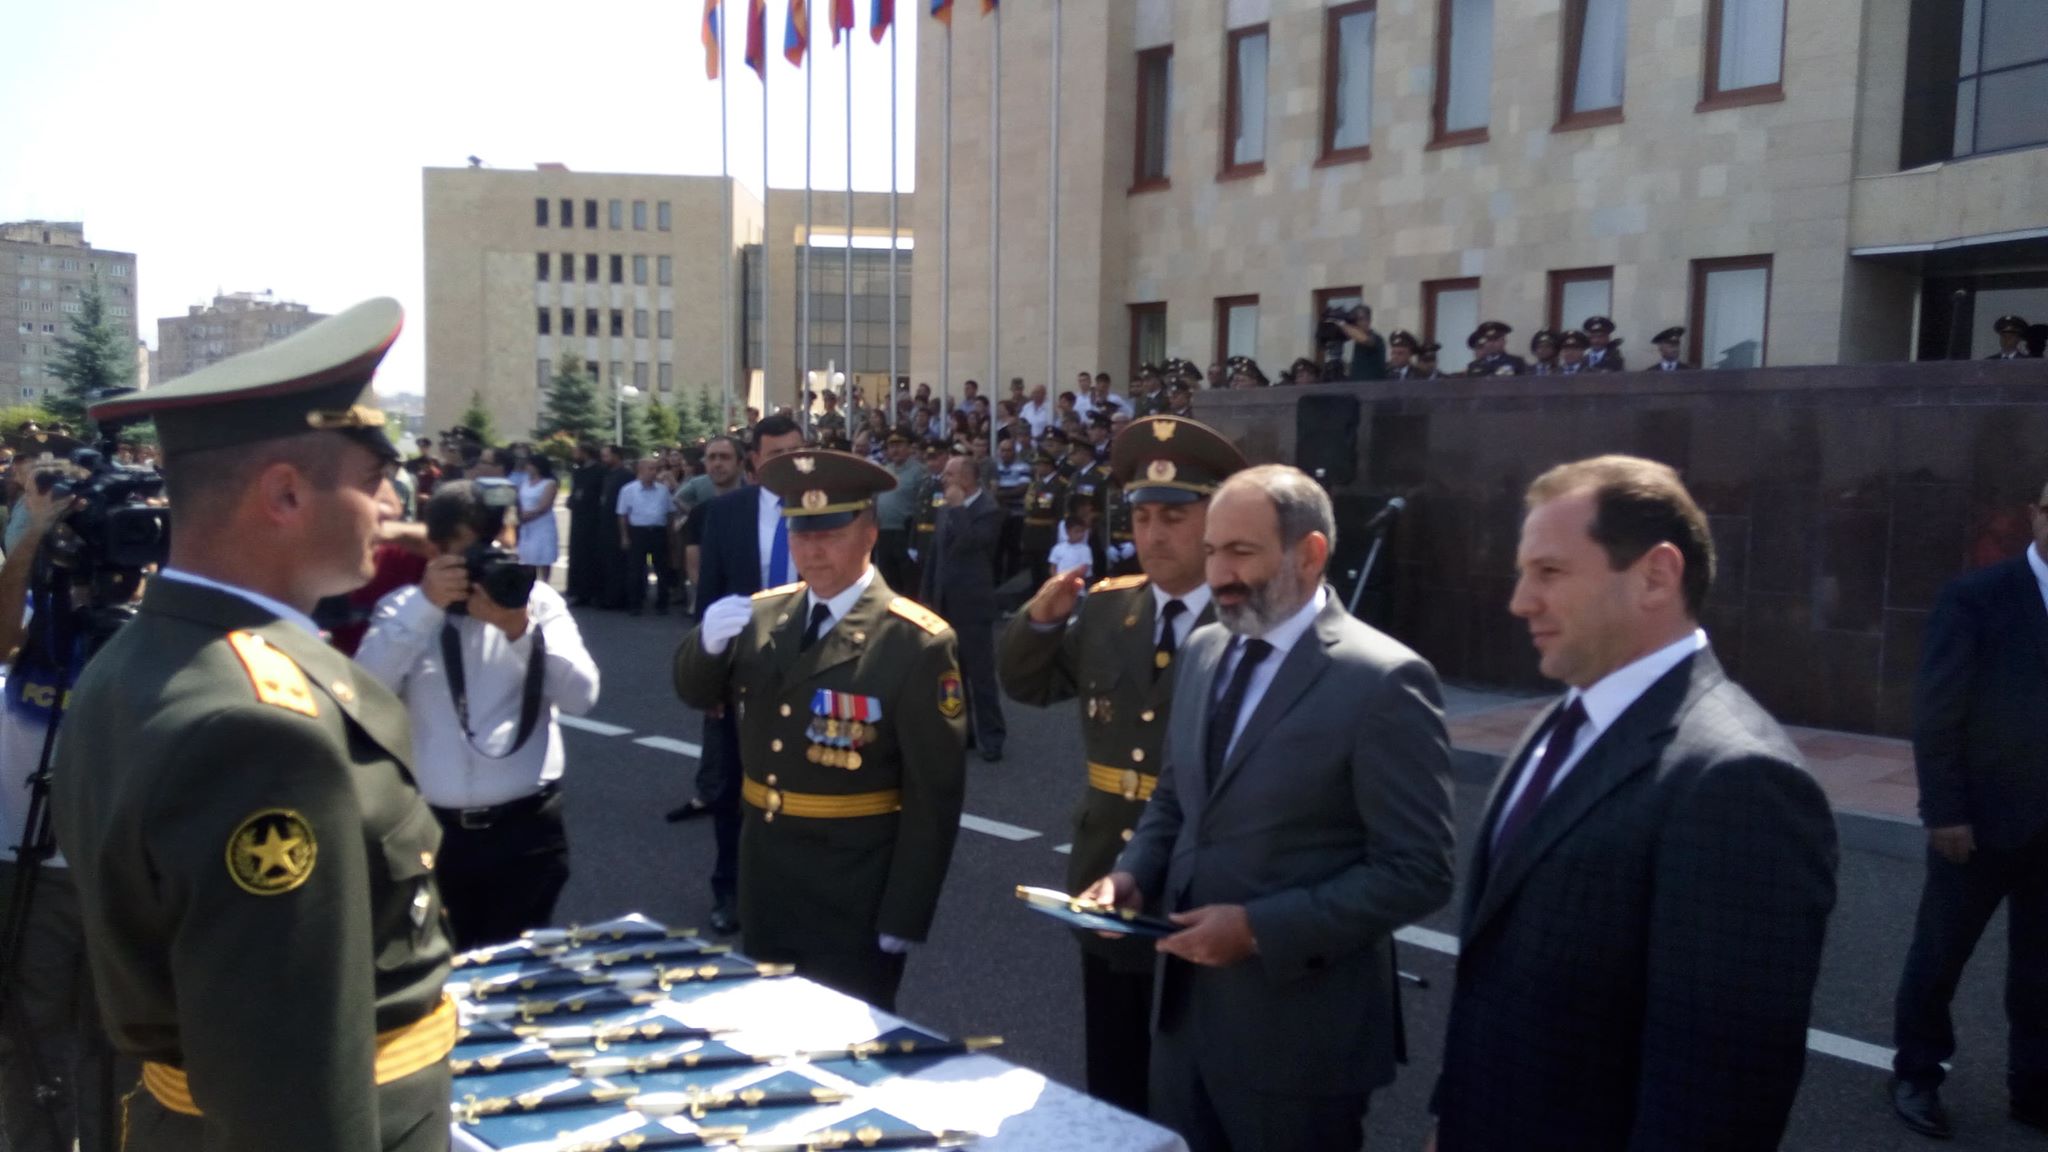 Ռազմաուսումնական հաստատությունների շրջանավարտները վարչապետի ներկայությամբ ստանում են զինվորական կոչումները (լրացված)